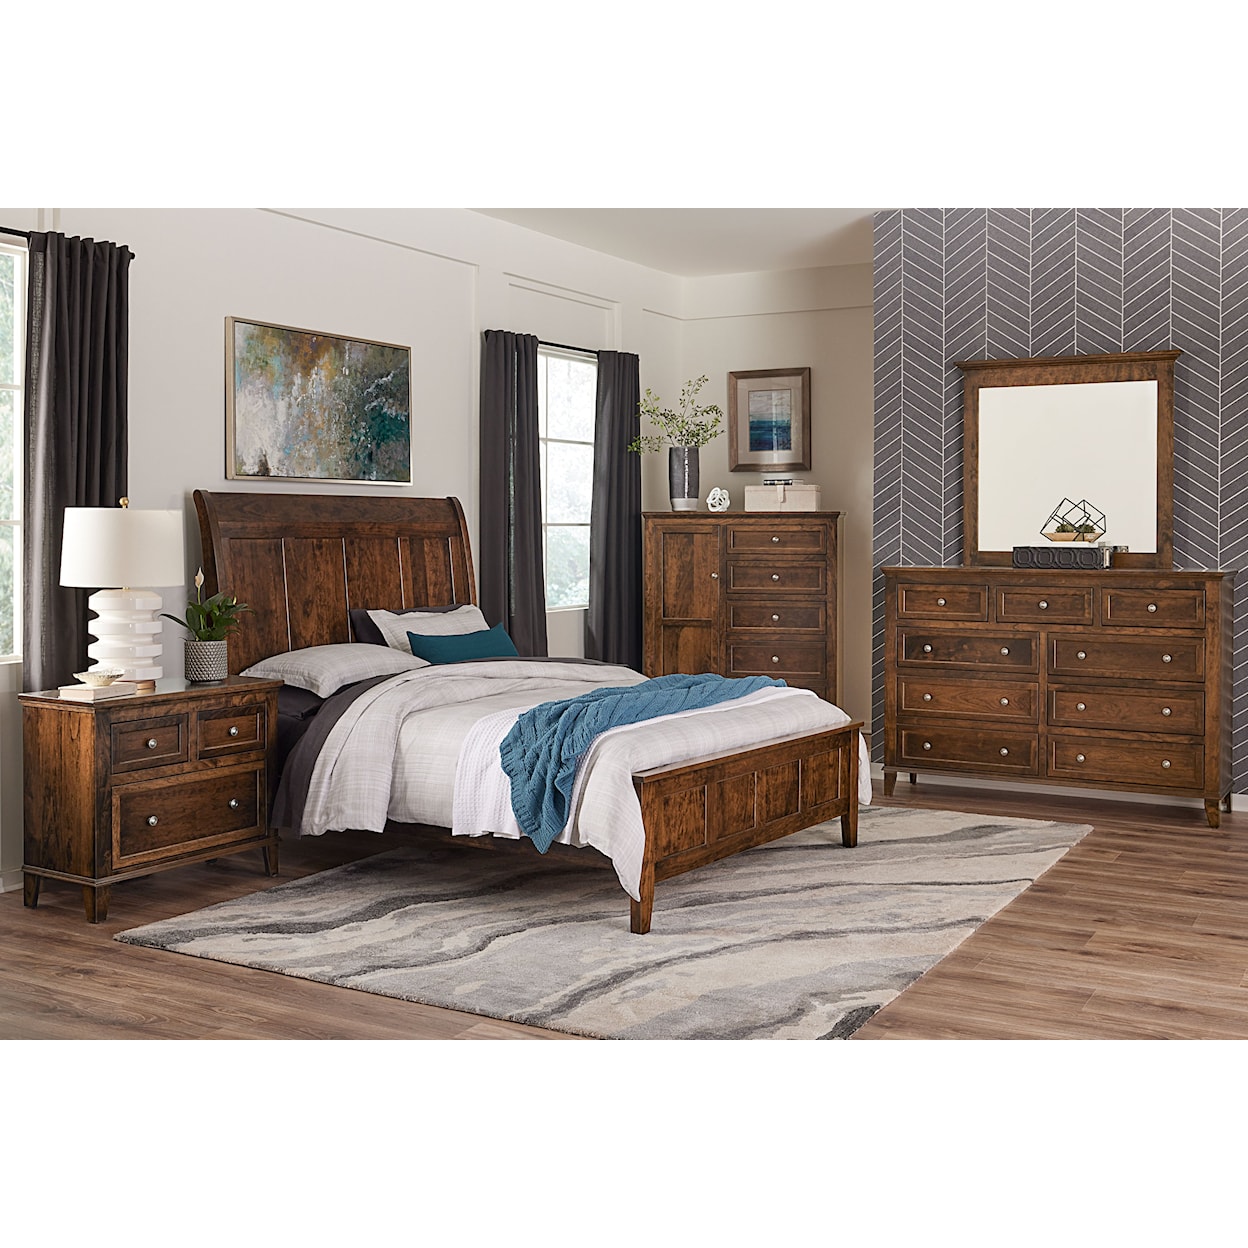 Archbold Furniture Belmont Queen Sleigh Bed